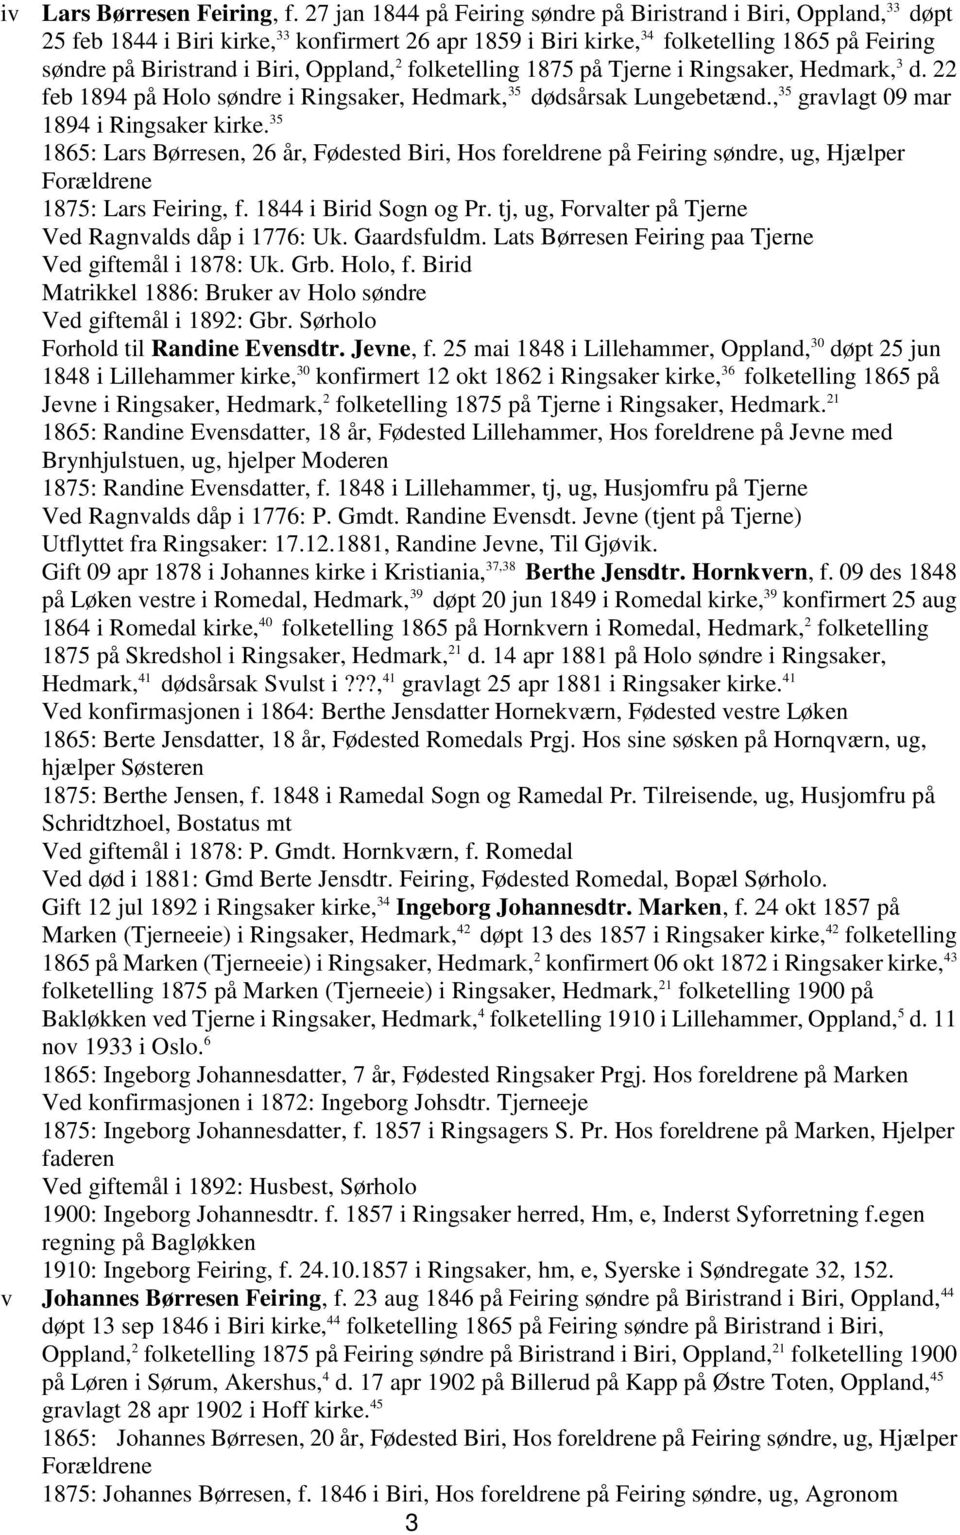 Oppland, 2 folketelling 1875 på Tjerne i Ringsaker, Hedmark, 3 d. 22 feb 1894 på Holo søndre i Ringsaker, Hedmark, 35 dødsårsak Lungebetænd., 35 gravlagt 09 mar 1894 i Ringsaker kirke.